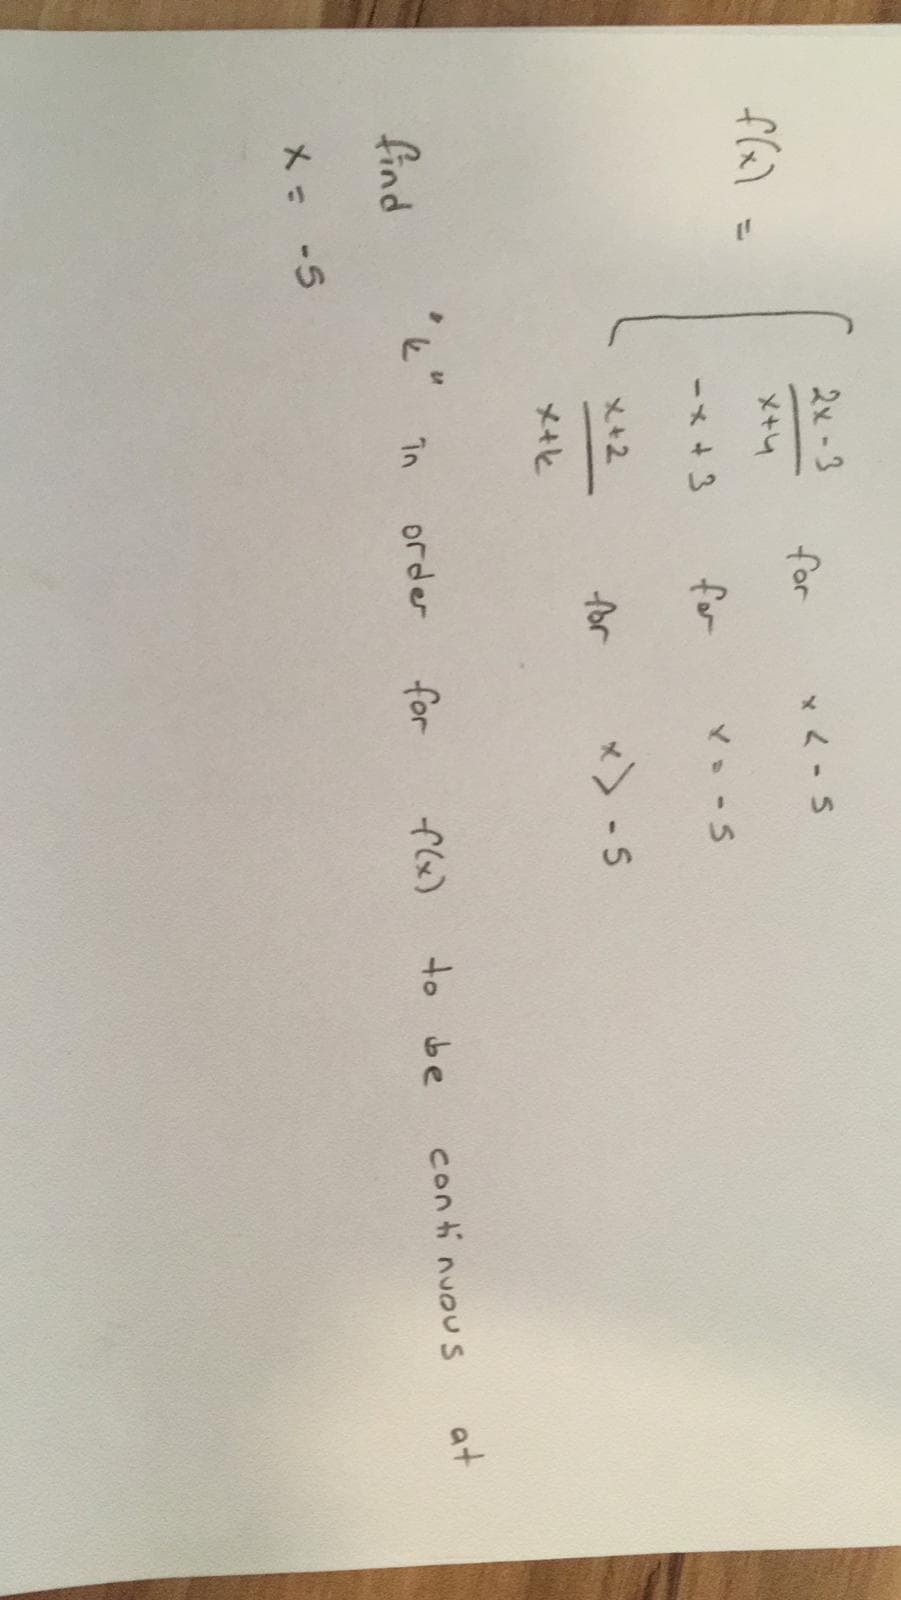 2x-3
for
*く-S
メ+4
%3D
ーメ+3
for
マ-S
メ+2
for
x) -5
メ+ヒ
find
*ビ"
し 1n
for
order
f(x)
to
メ- -5
